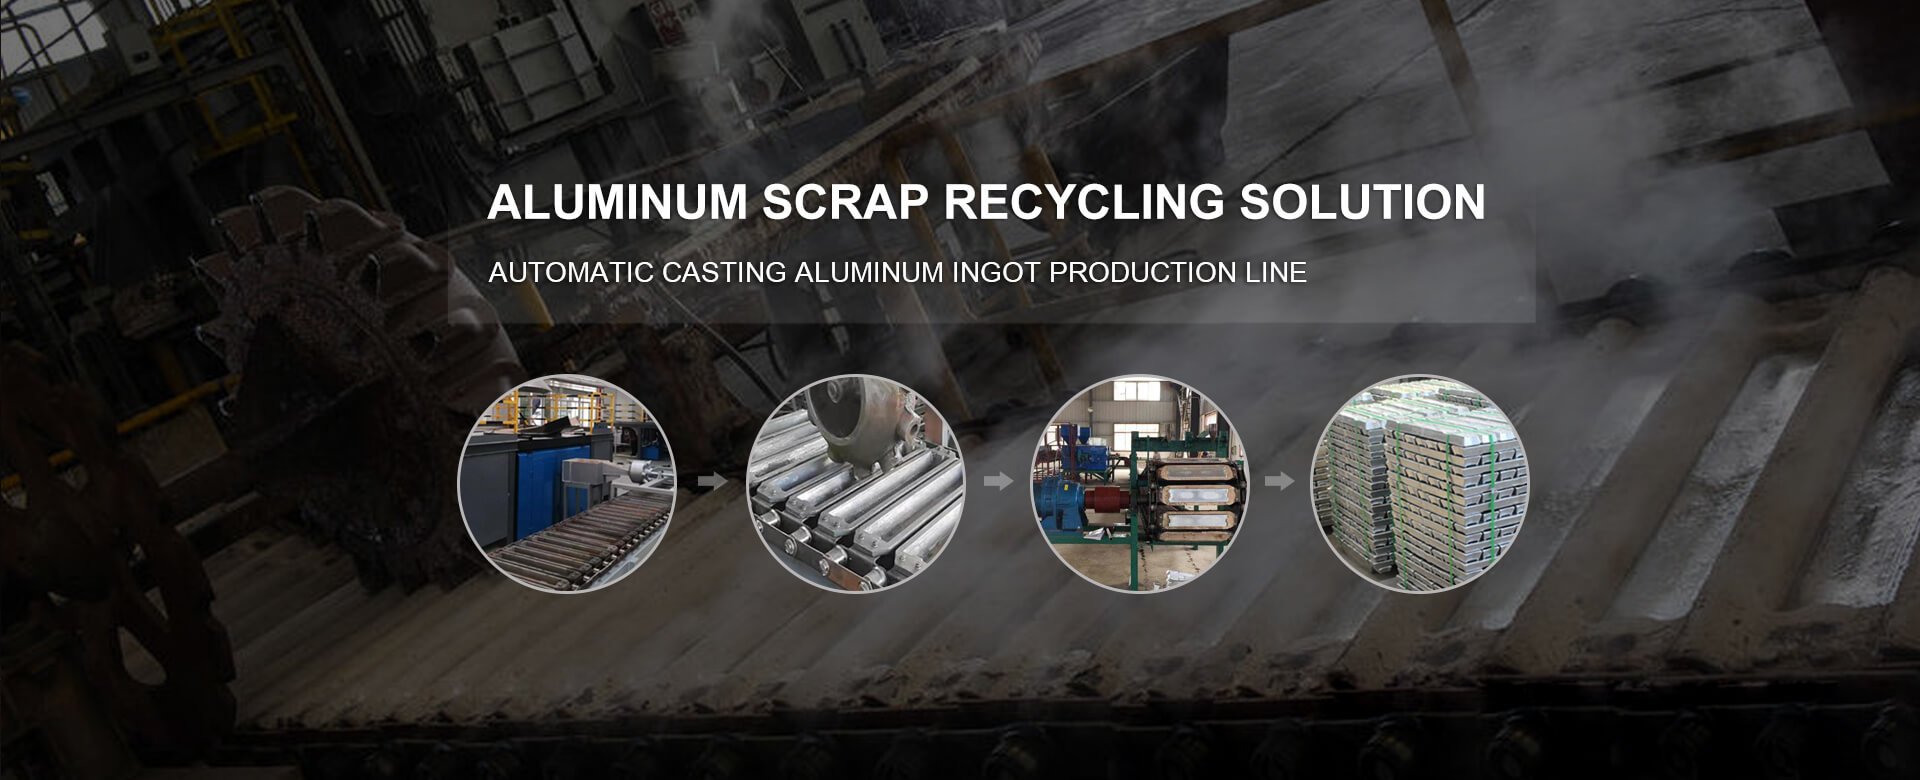 Hongteng aluminum scrap recycling system